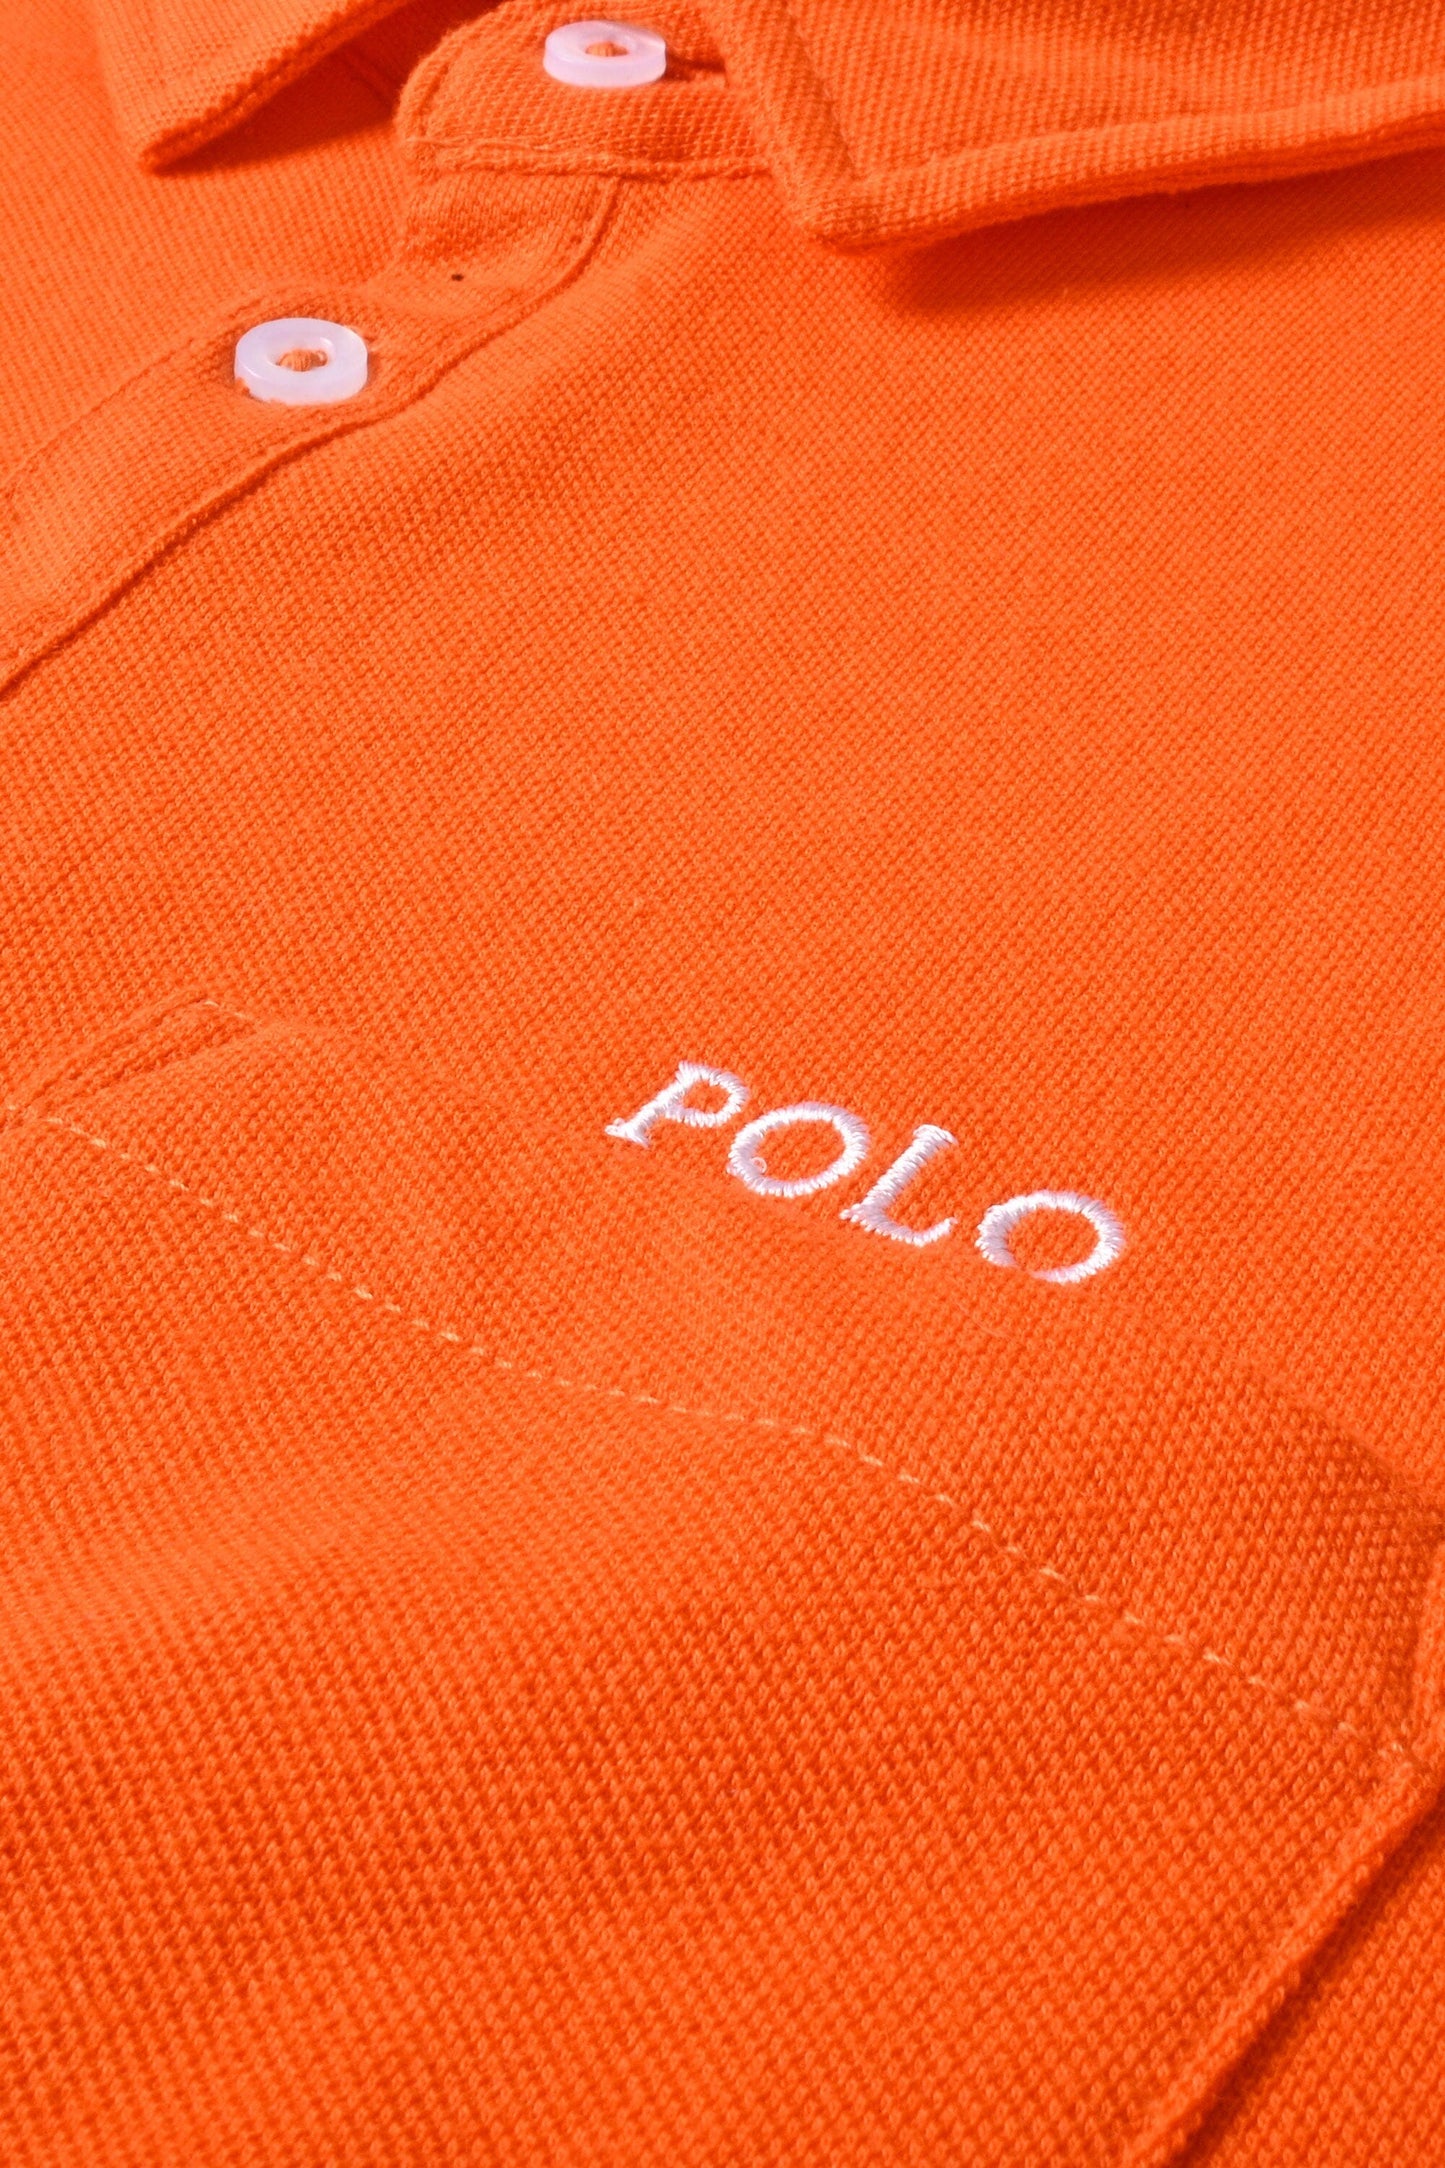 Polo Republica Men's Polo Crest Embroidered Pocket Polo Shirt Men's Polo Shirt Polo Republica 